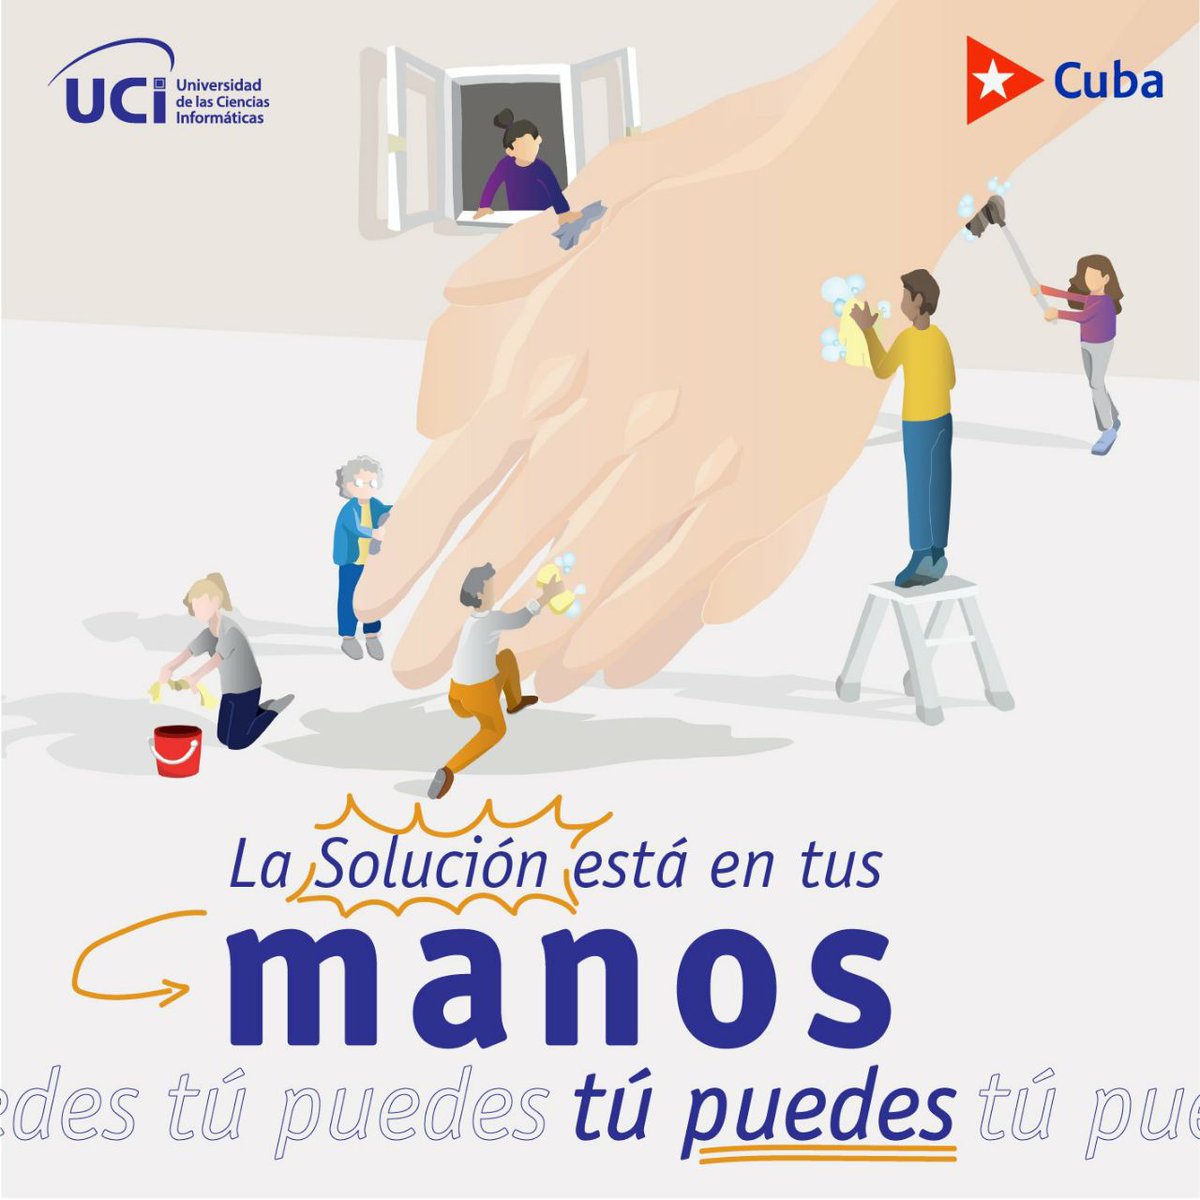 #BandecRecomienda Cumplir con las medidas higiénico-sanitarias y lavar tus manos frecuentemente. #ViralizaLoQueSalva #CubaPorLaSalud #ActuarResponsable